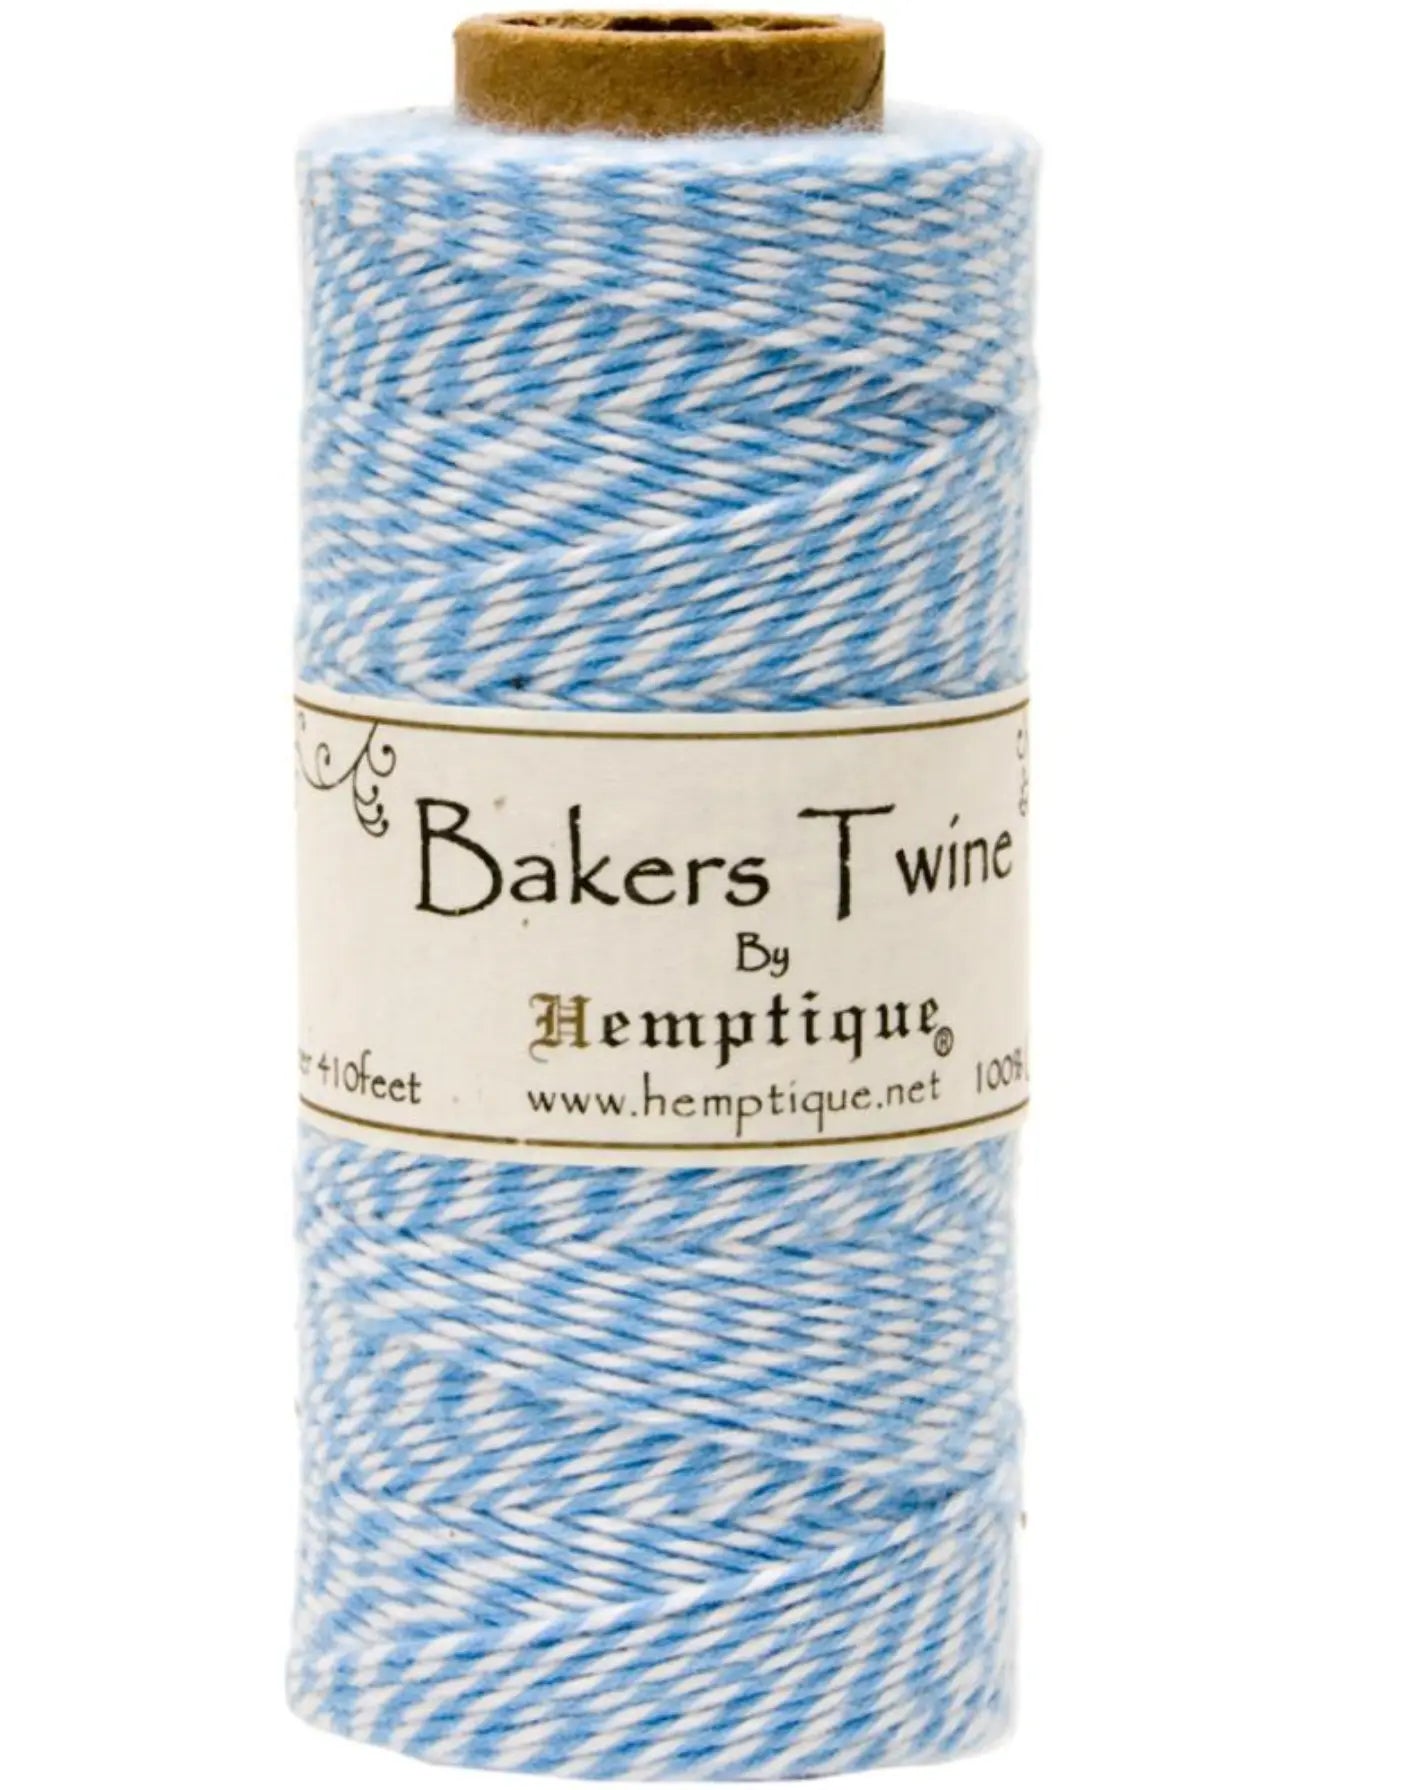 Baker's Twine Light Blue by Hemptique Hemptique